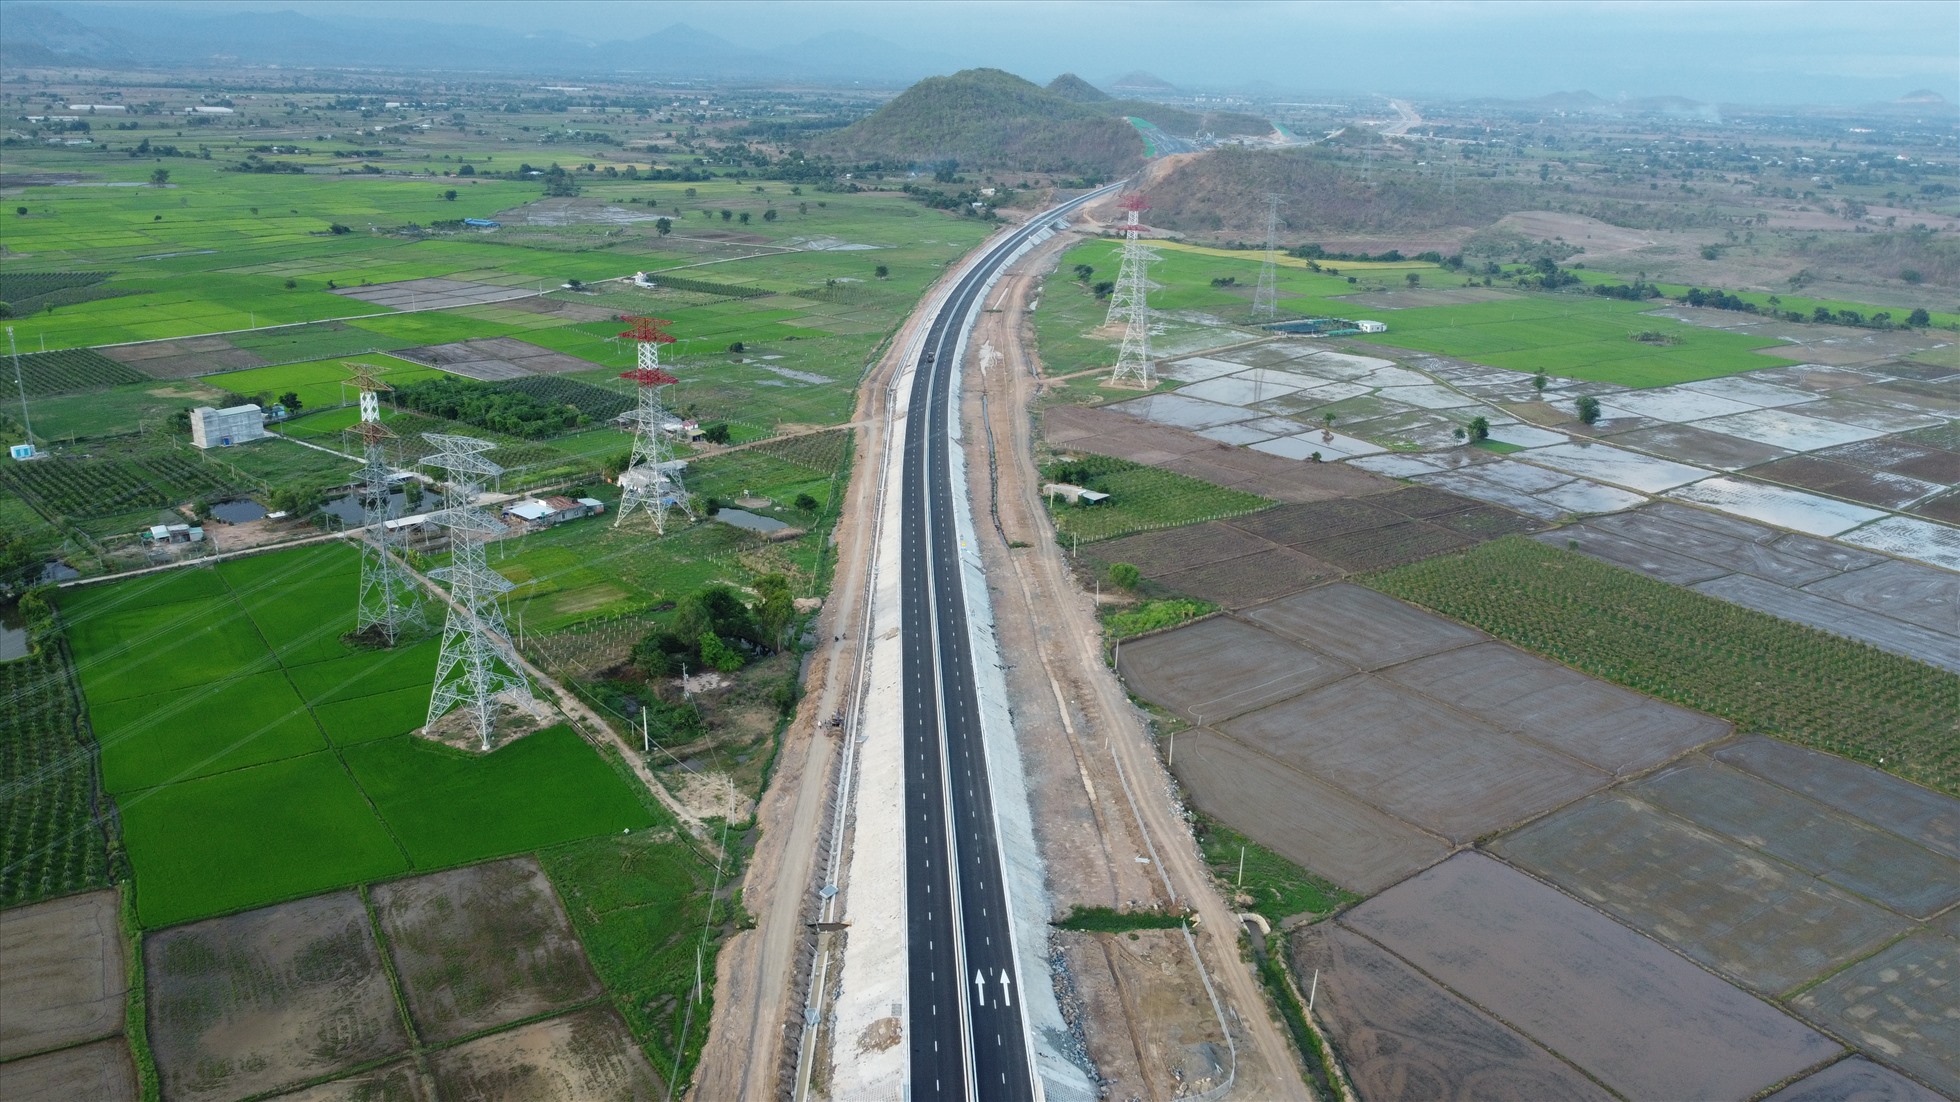 Tuyến cao tốc trải dài qua 4 huyện của tỉnh Bình Thuận, với nhiều đoạn đi qua những cánh đồng lúa xanh ngát trông rất đẹp mắt.